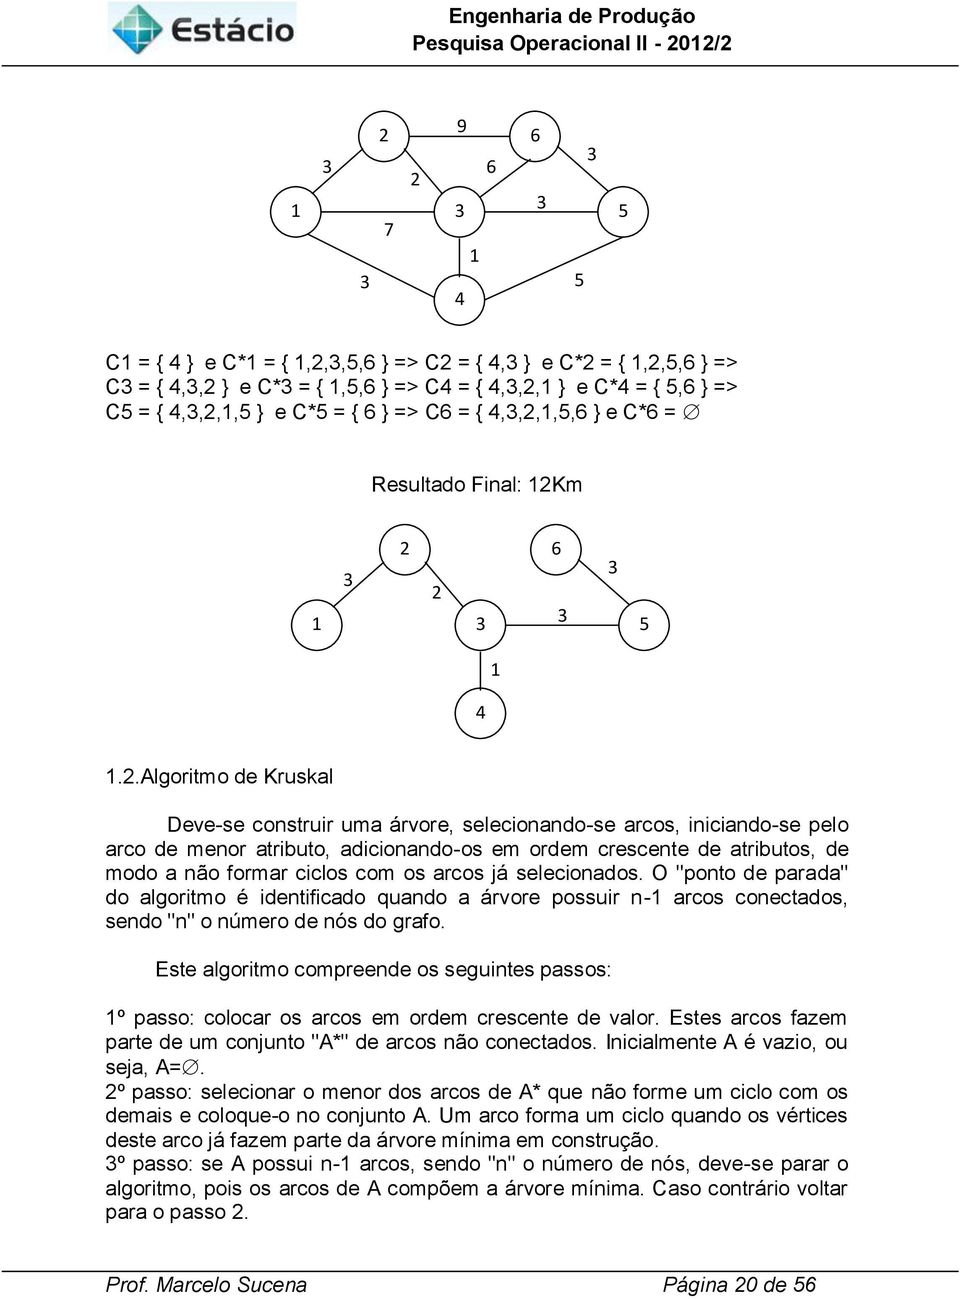 m 2 6 2 5 4.2.Algoritmo de Kruskal Deve-se construir uma árvore, selecionando-se arcos, iniciando-se pelo arco de menor atributo, adicionando-os em ordem crescente de atributos, de modo a não formar